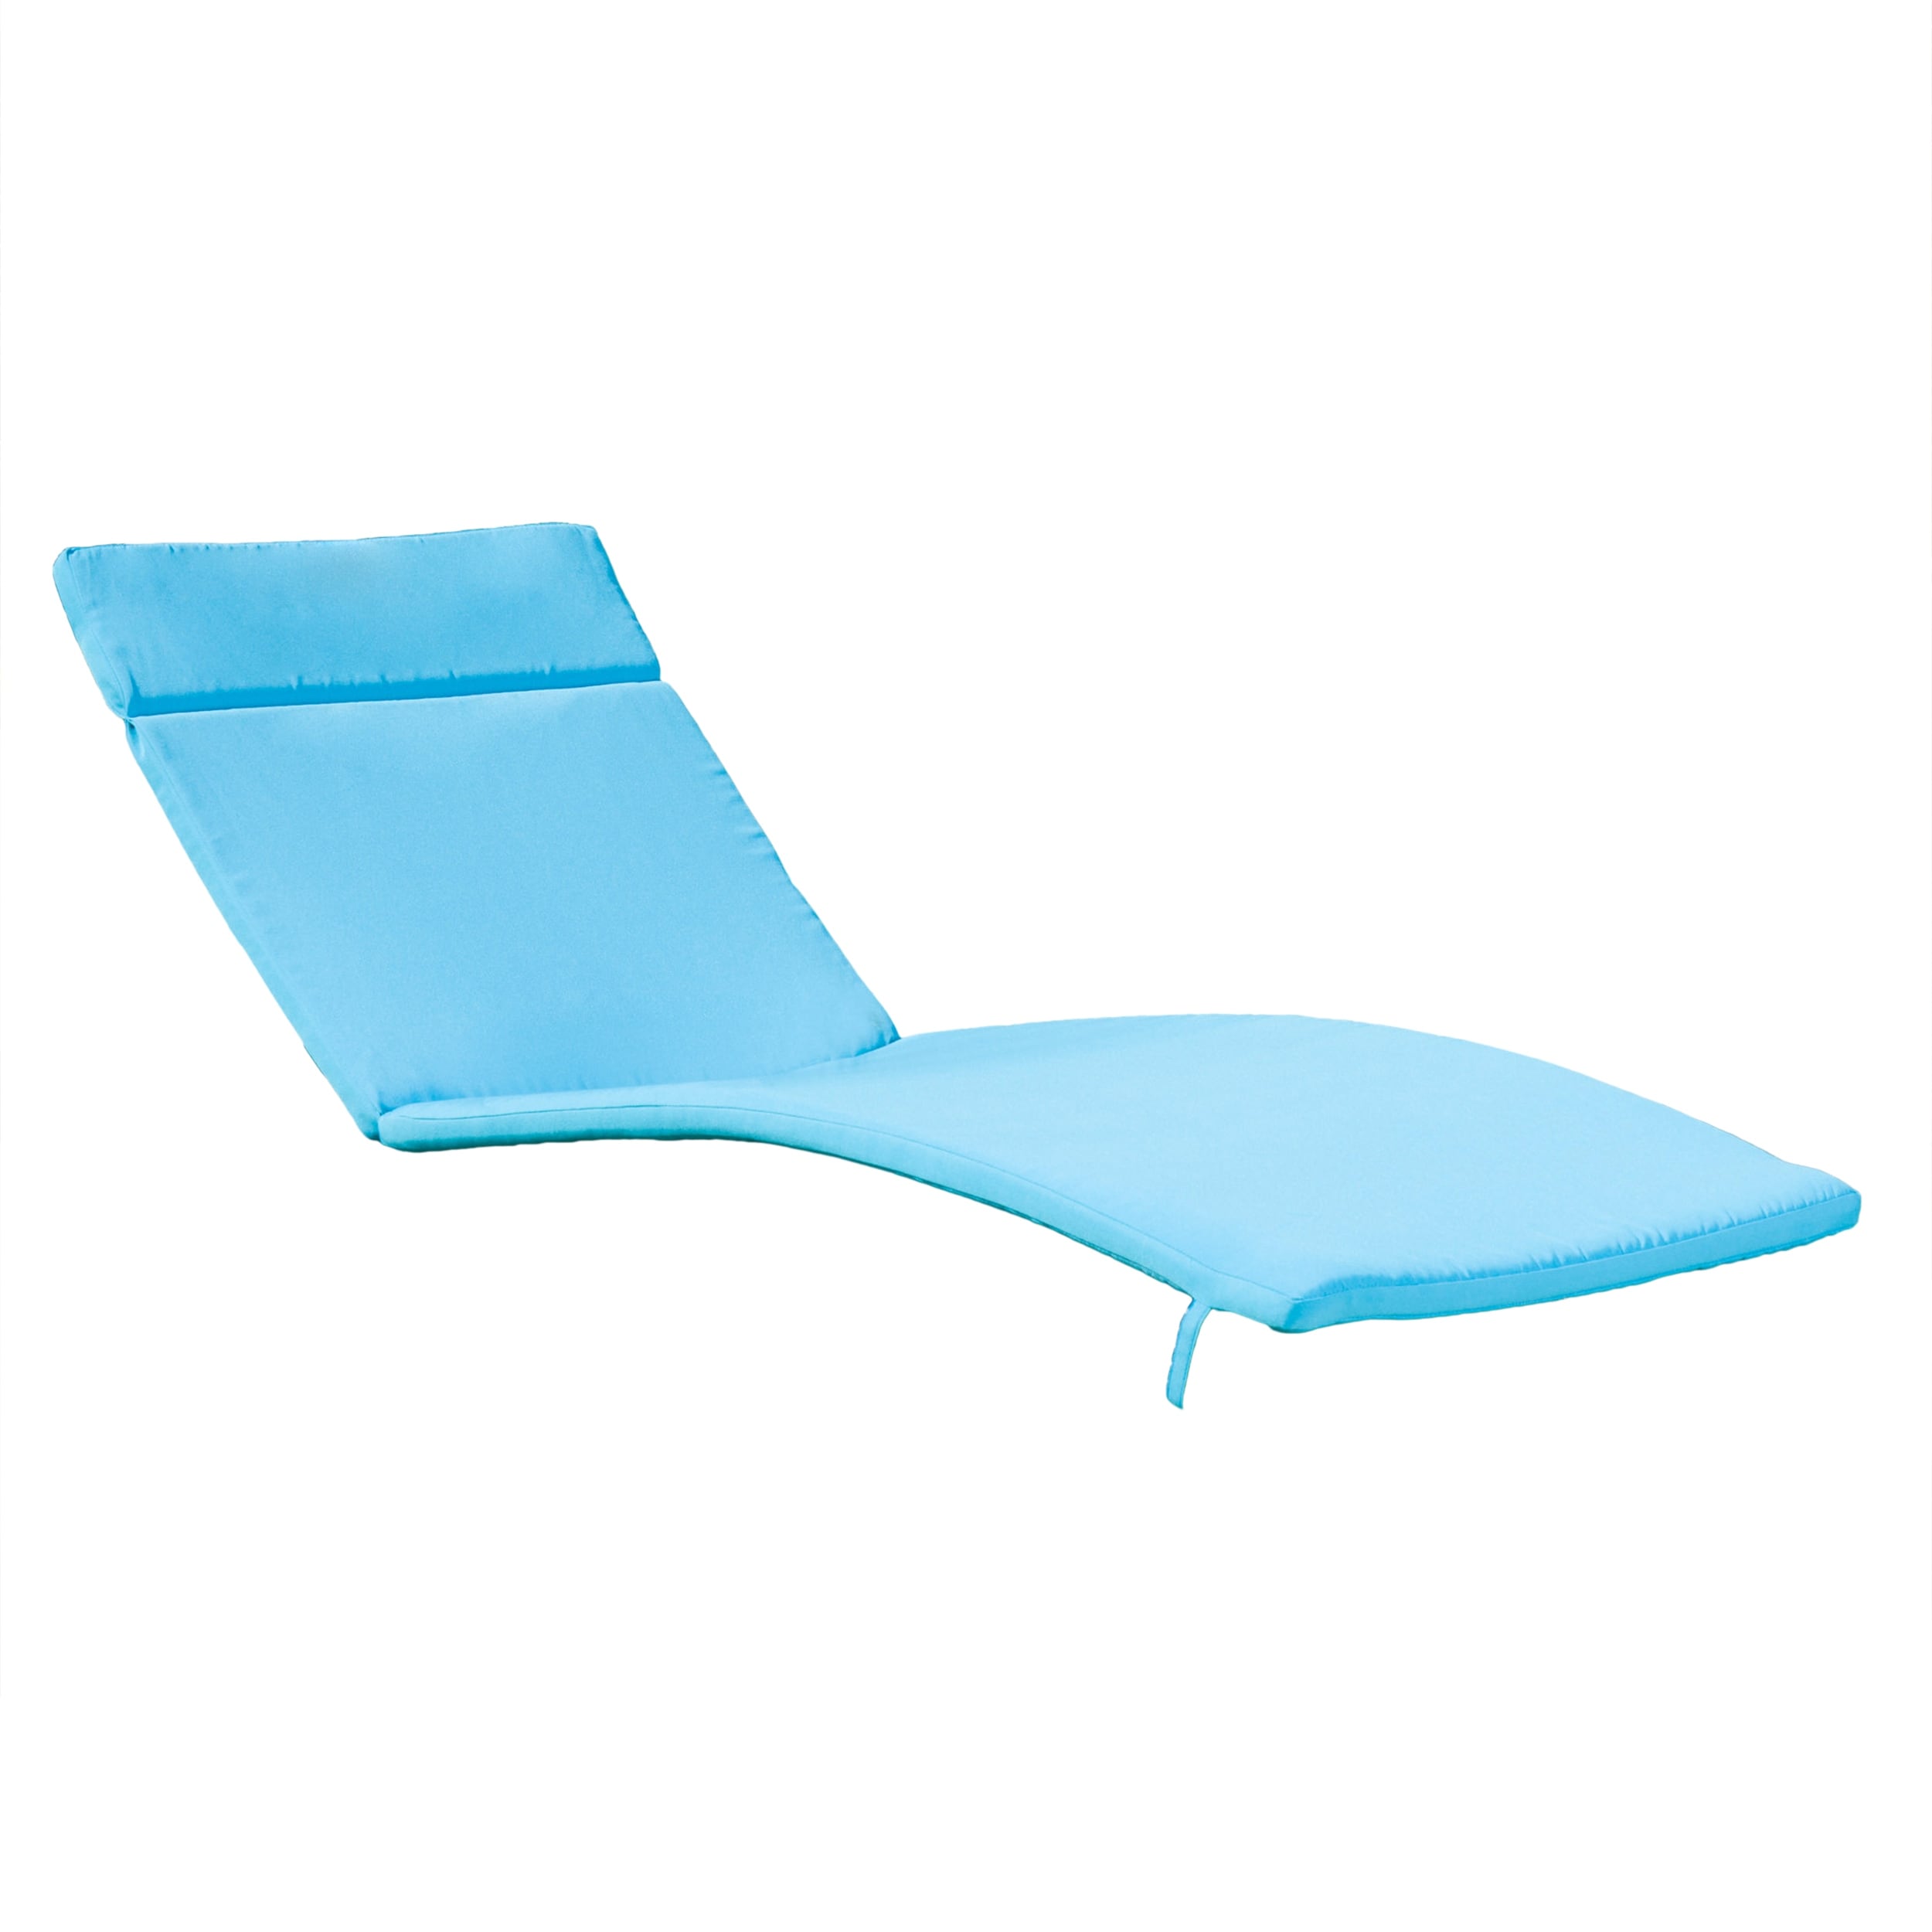 44 x 44 x 4 Outdoor Papasan Chair Cushion Wedge Wood Blue - Sorra Home